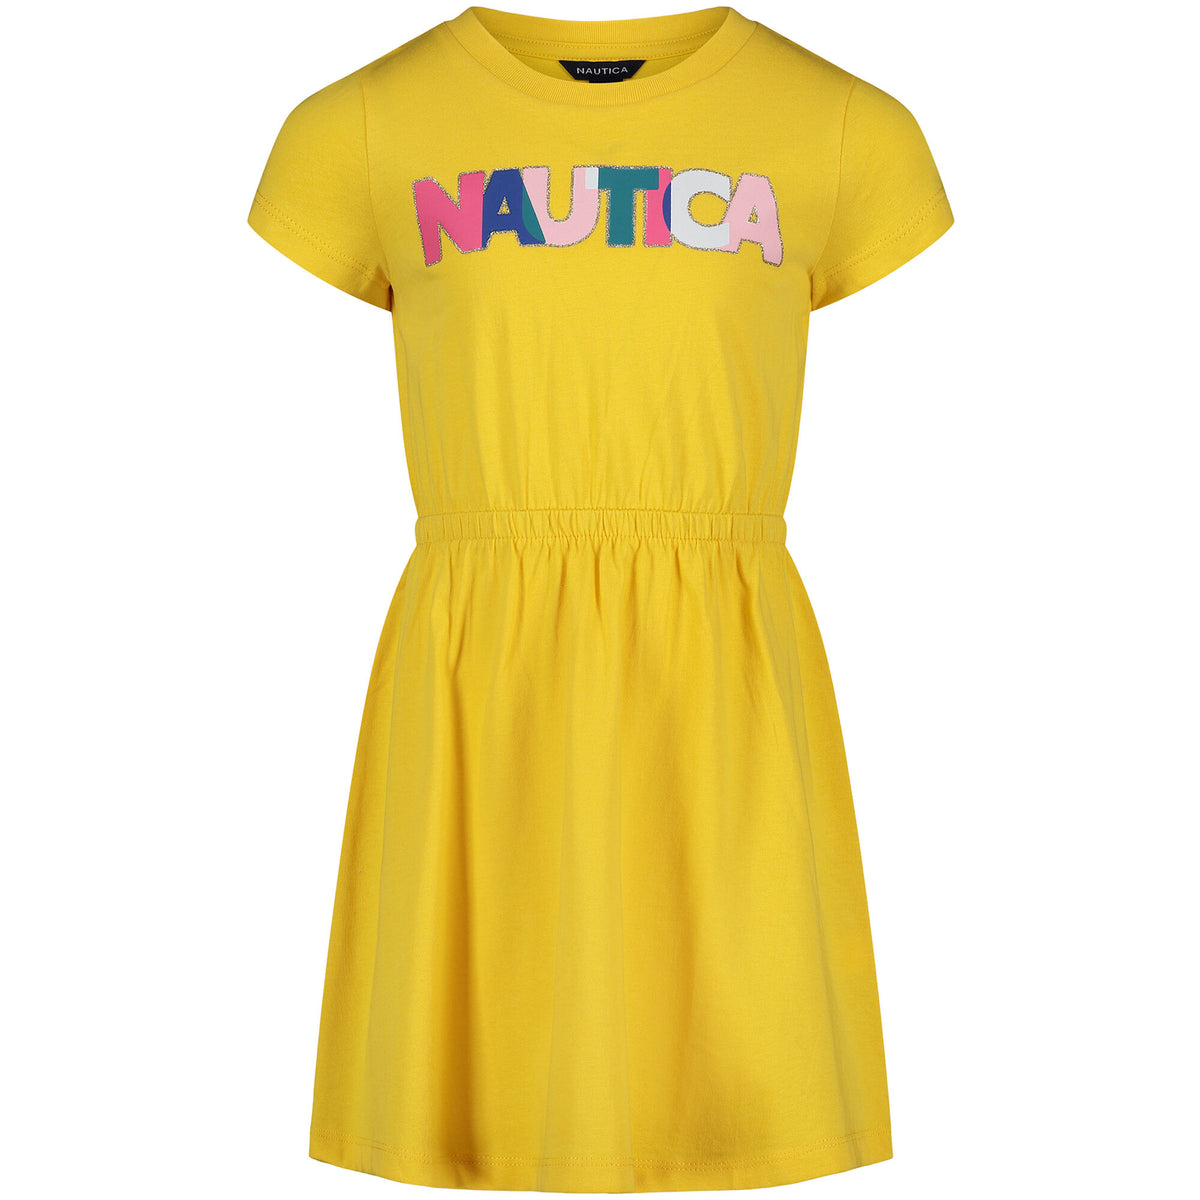 Nautica Toddler Girls' Rainbow Dress (2T-4T) Neon Yellow